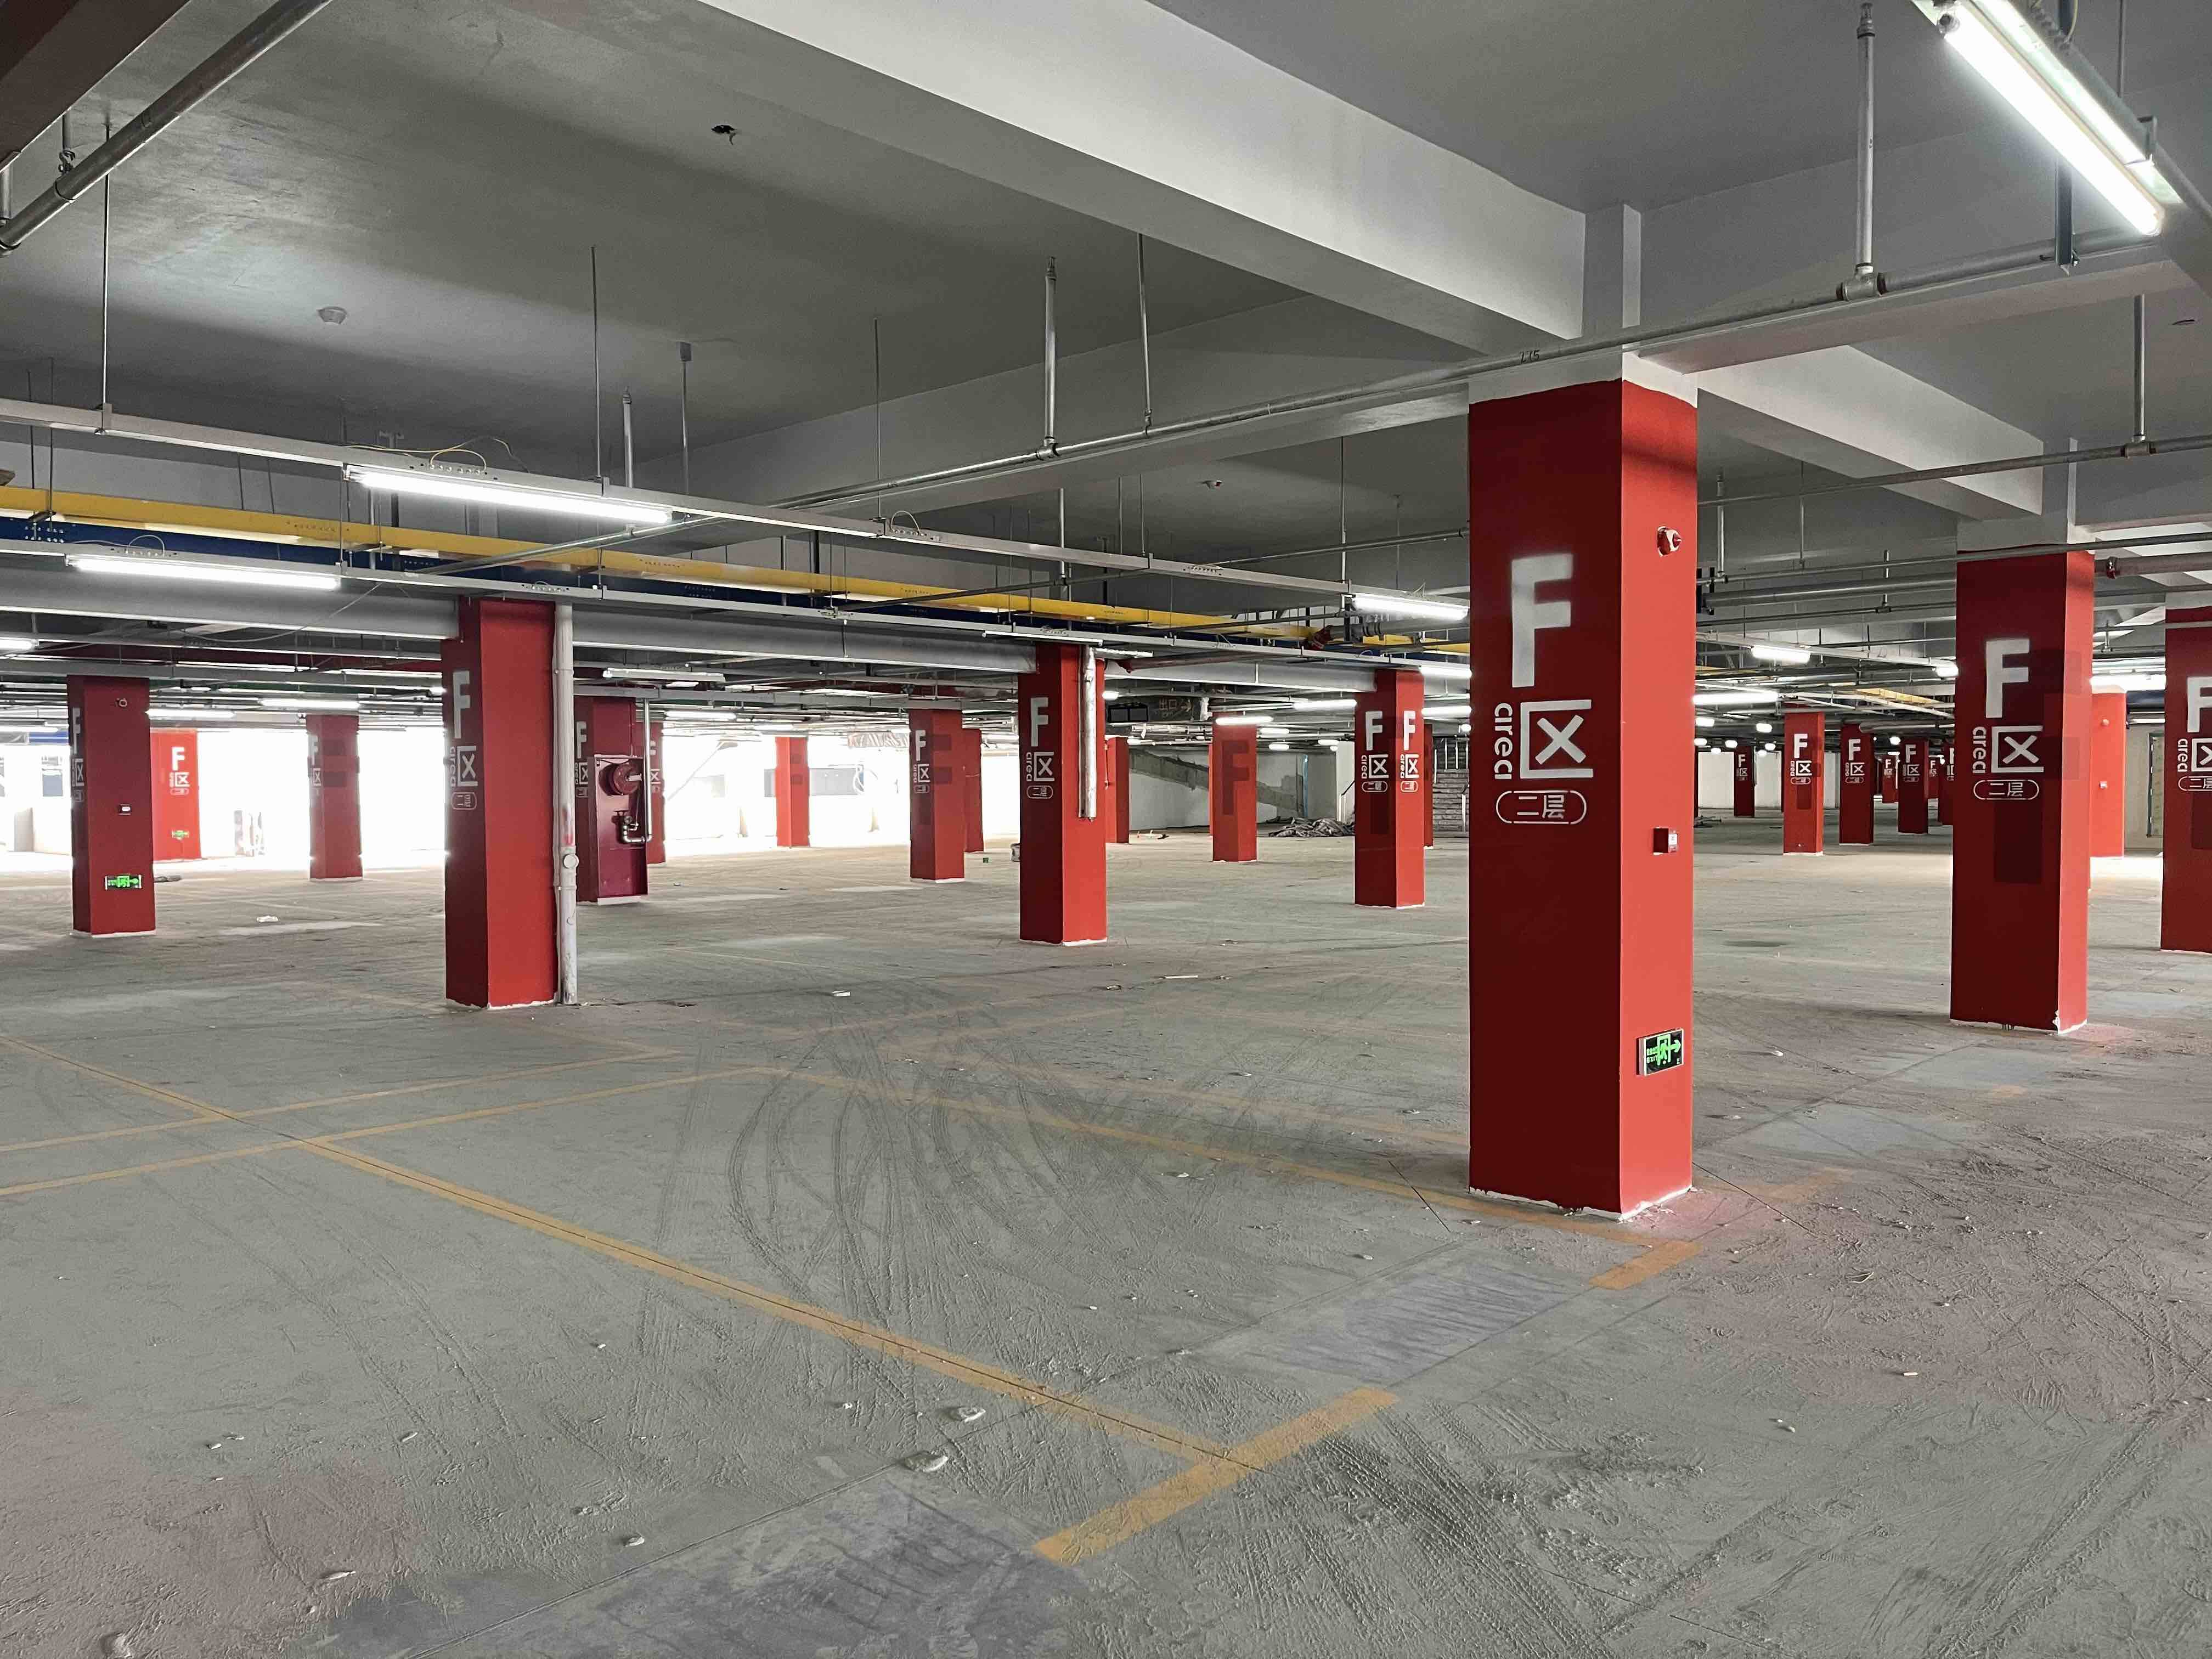 可停6000辆车！超大型装配式停车楼将于5月29日在济南启用